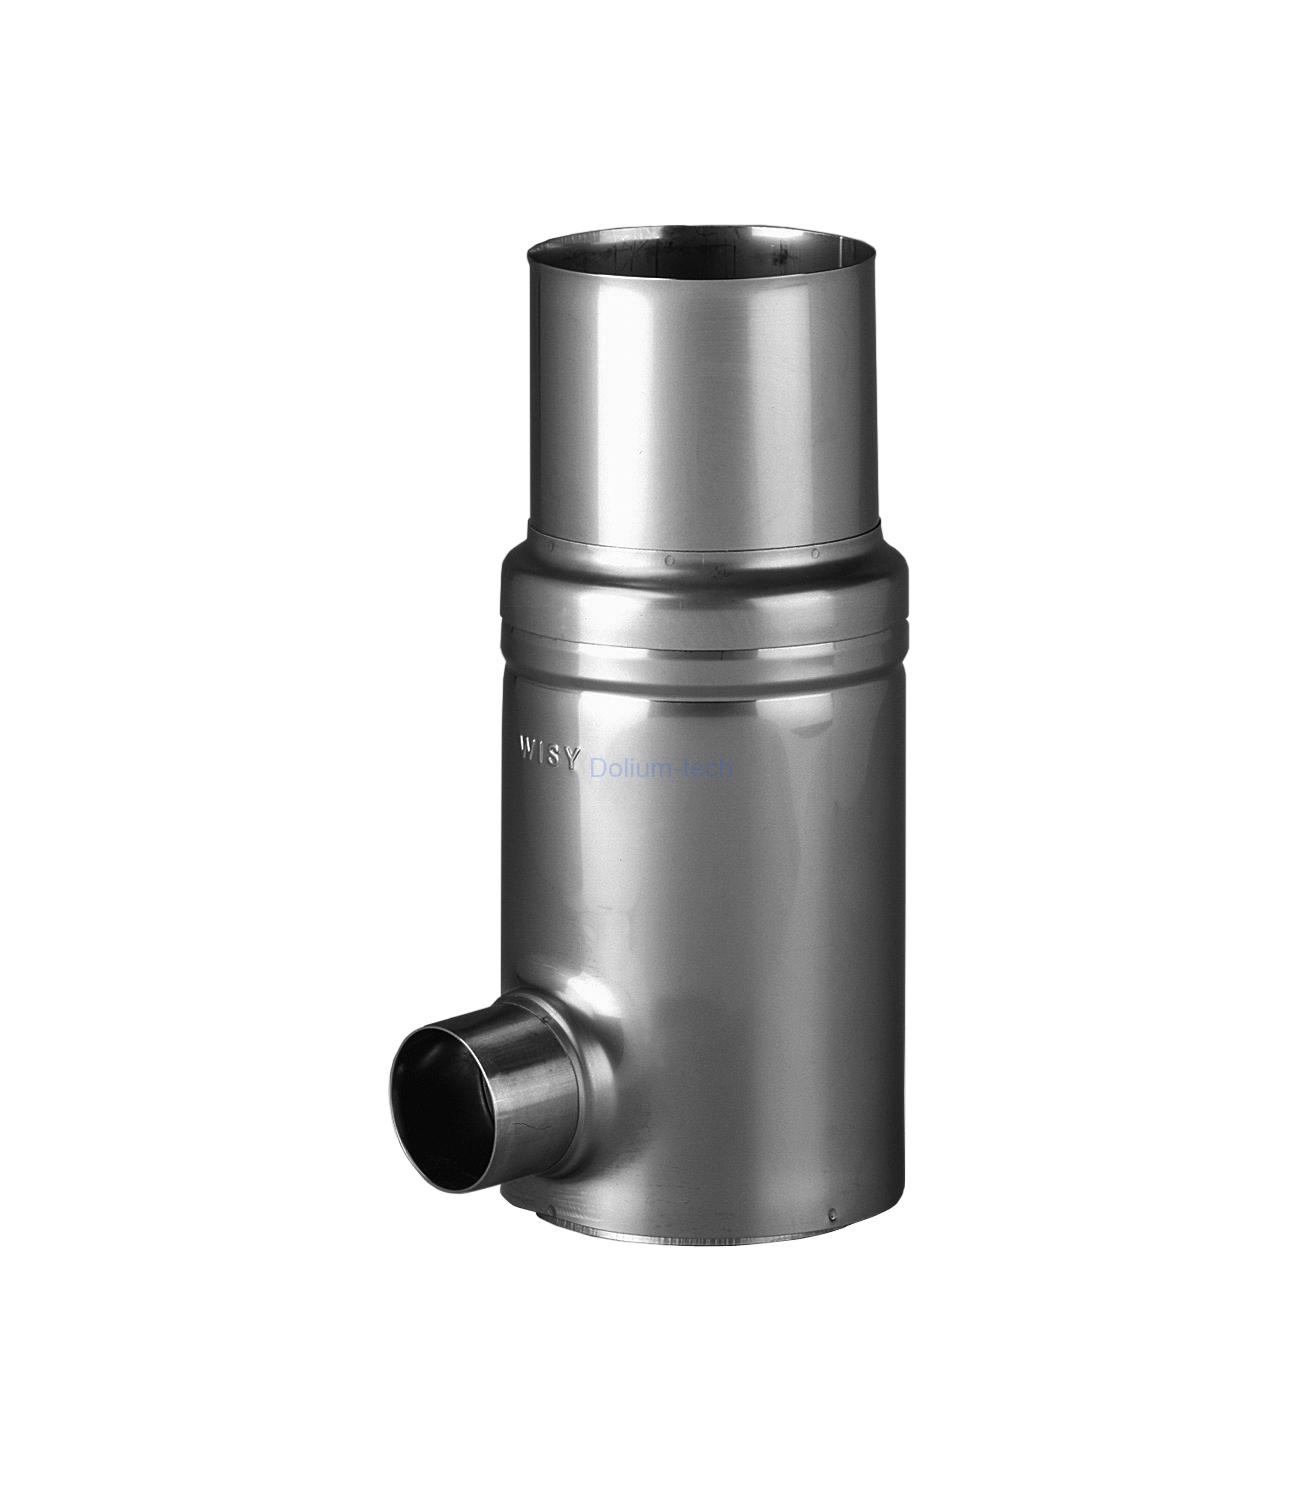 Okapový filtr GRS 100 VA-nerez, filtrační vložka nerez, jemnost 0,44 mm